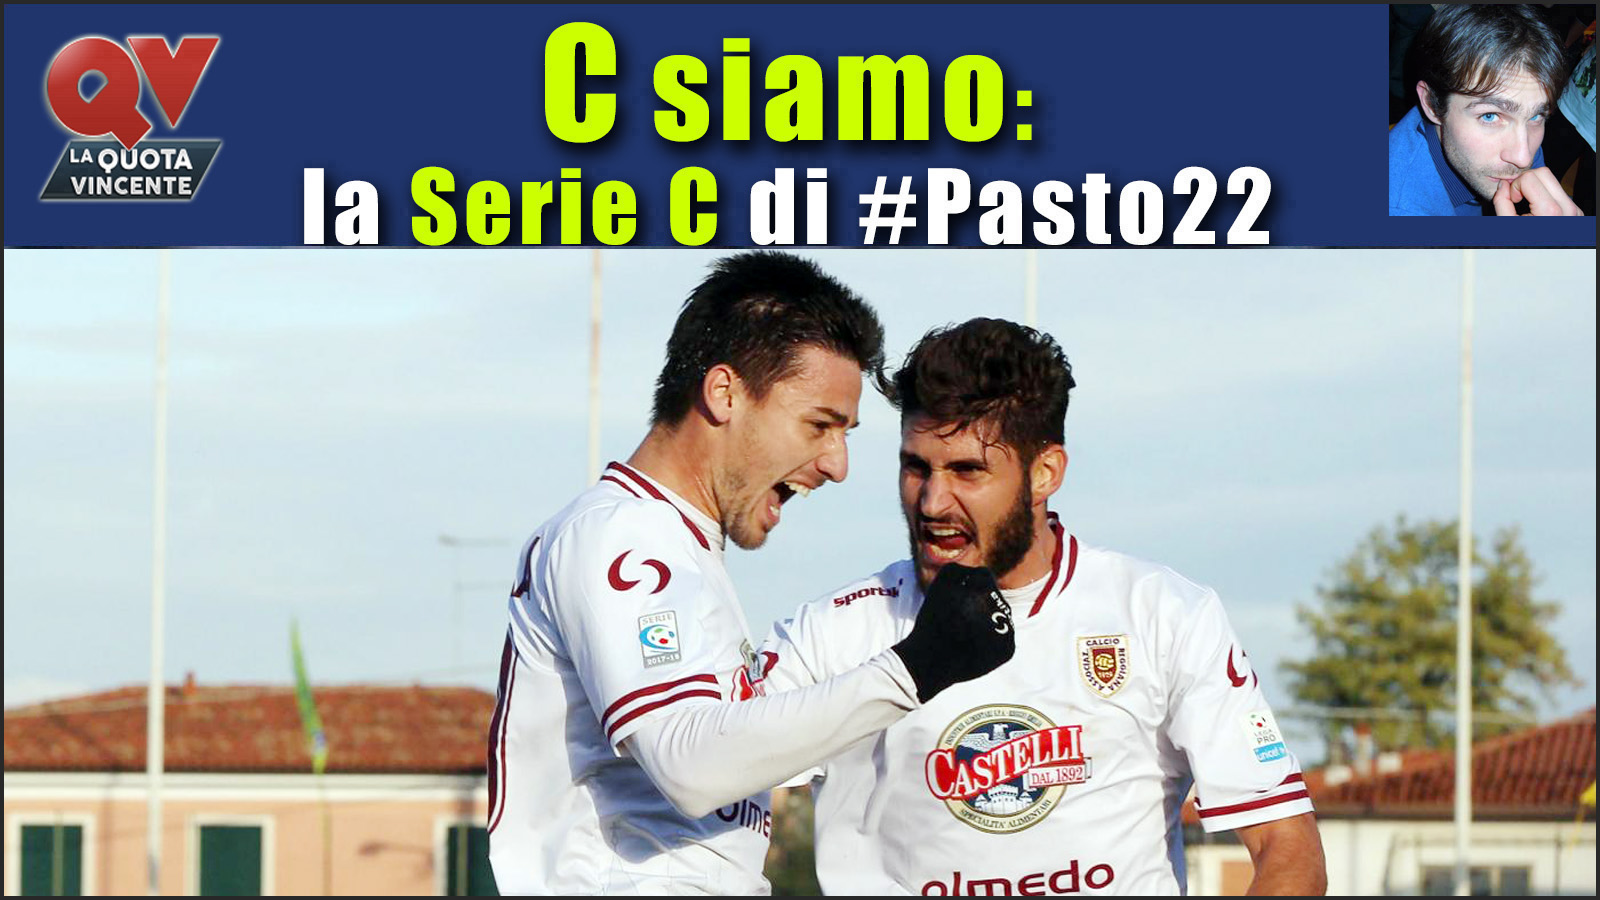 Pronostici Serie C venerdì 22 dicembre: #Csiamo, il blog di #Pasto22